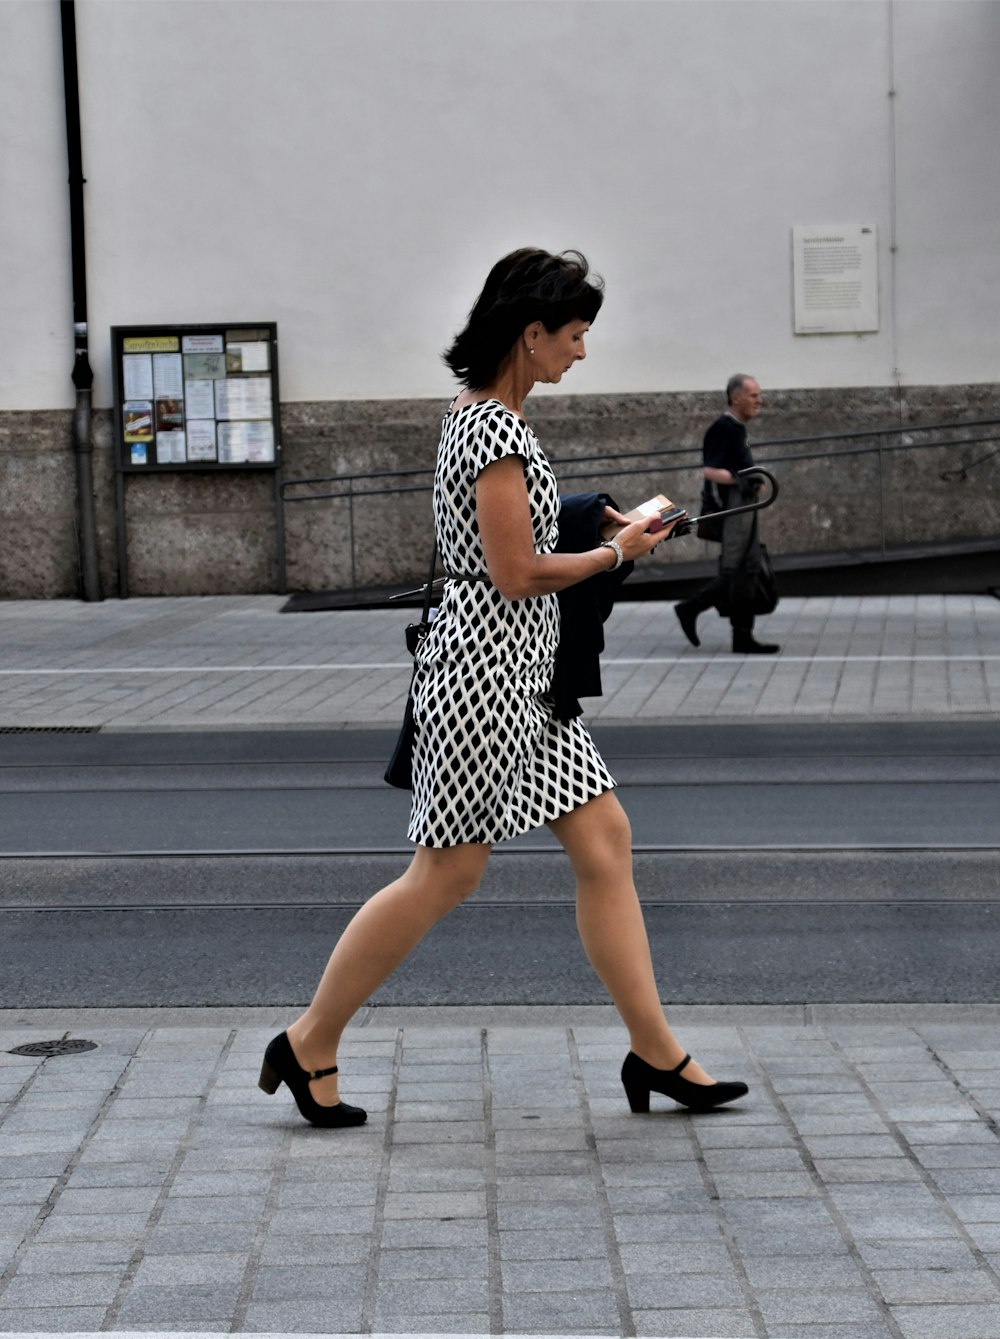 昼間に歩道を歩く黒と白の水玉模様のドレスを着た女性